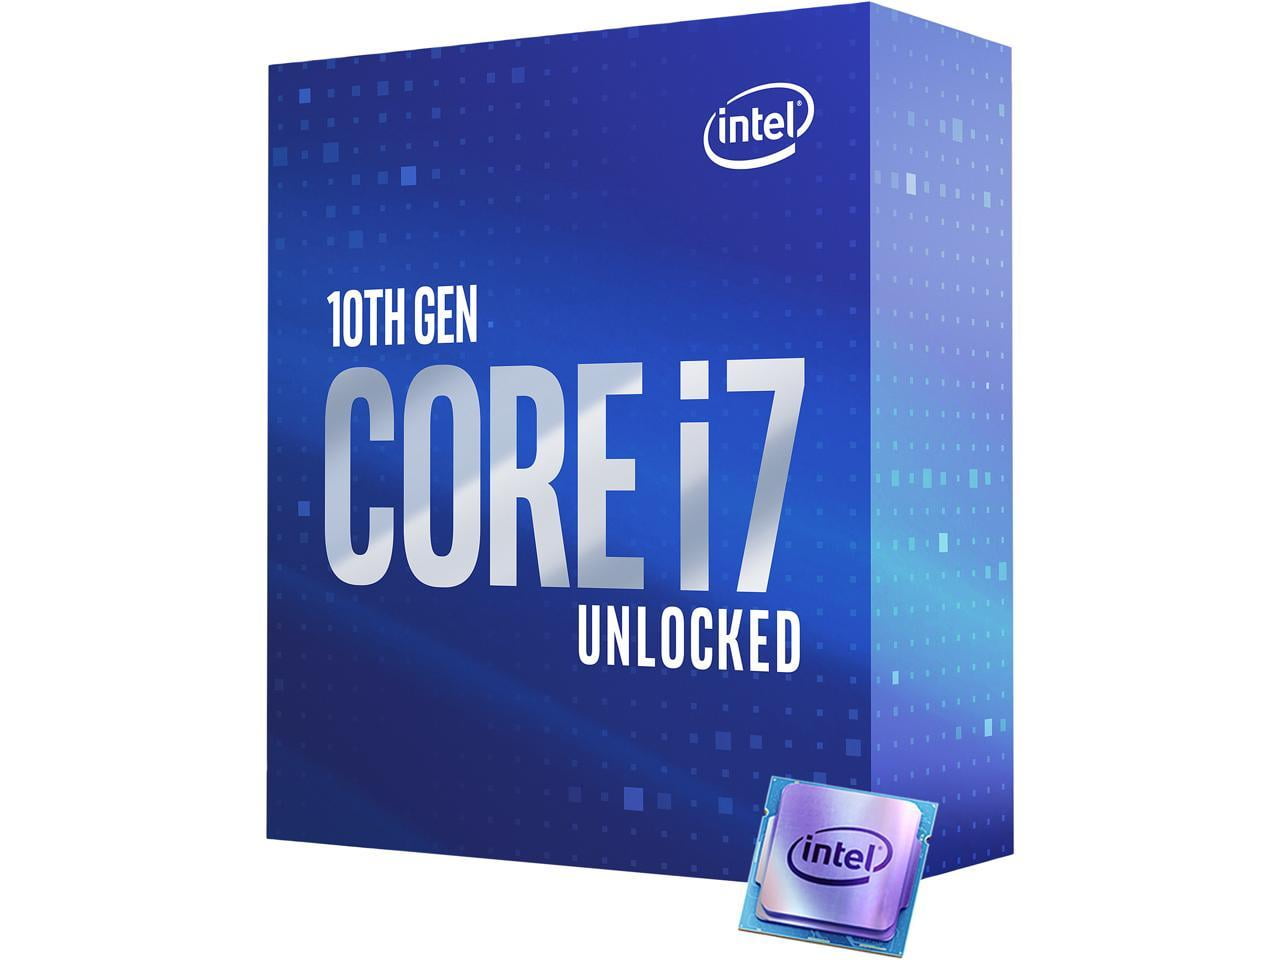 software klaver Paradoks Intel Core i7 10th Gen - Core i7-10700K Comet Lake 8-Core 3.8 GHz LGA 1200  125W Desktop Processor w/ Intel UHD Graphics 630 - Walmart.com